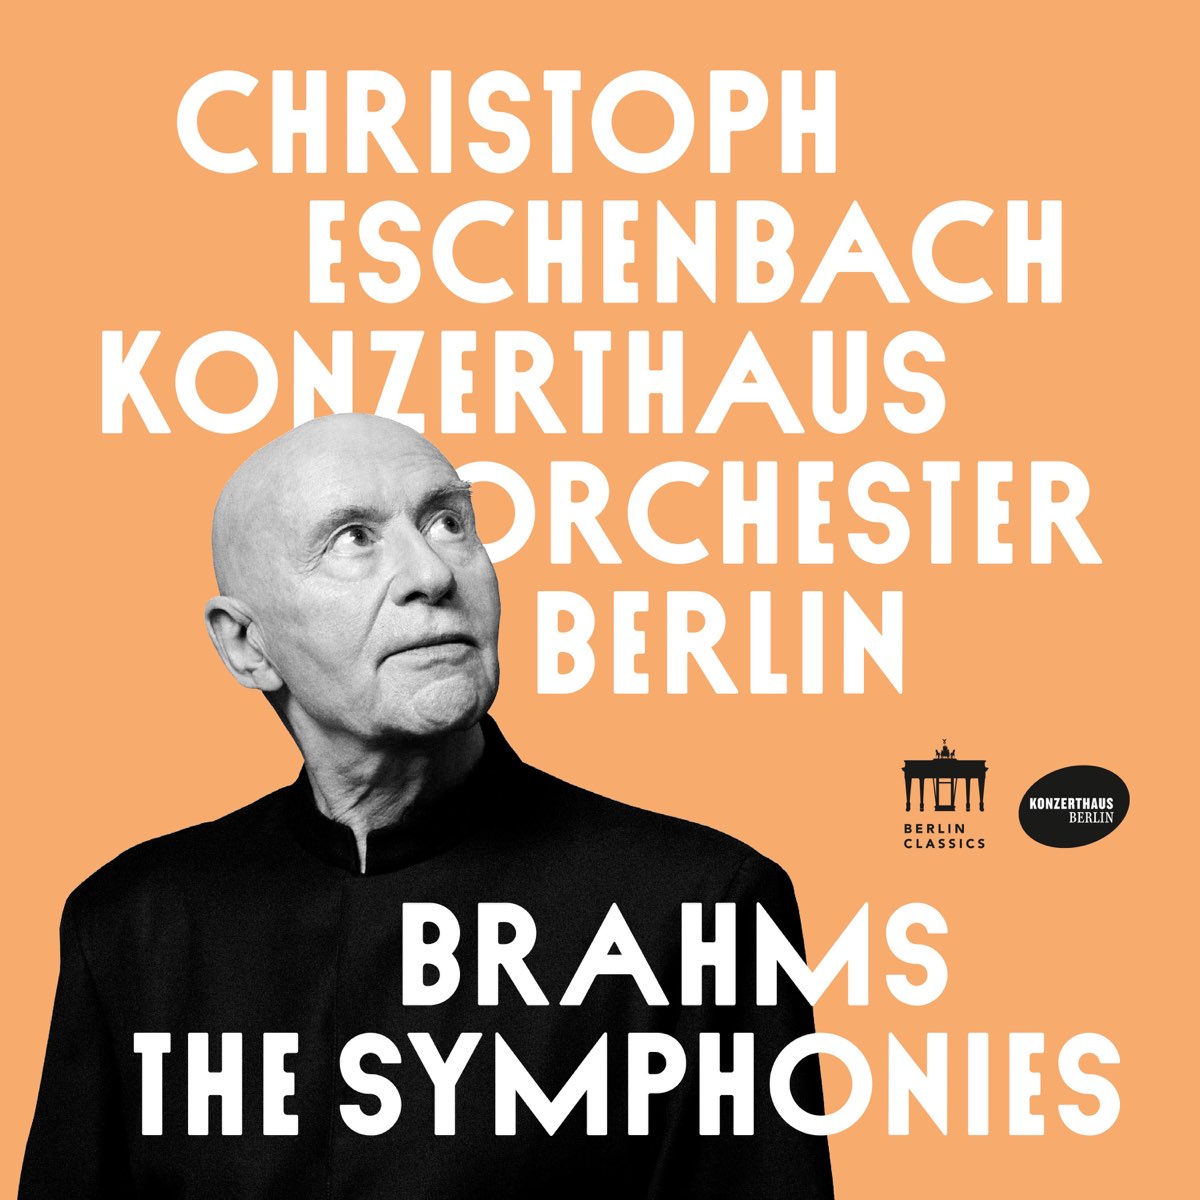 Konzerthausorchester Berlin & Christoph Eschenbach – Brahms: The Symphonies (2021) [FLAC 24bit/96kHz]